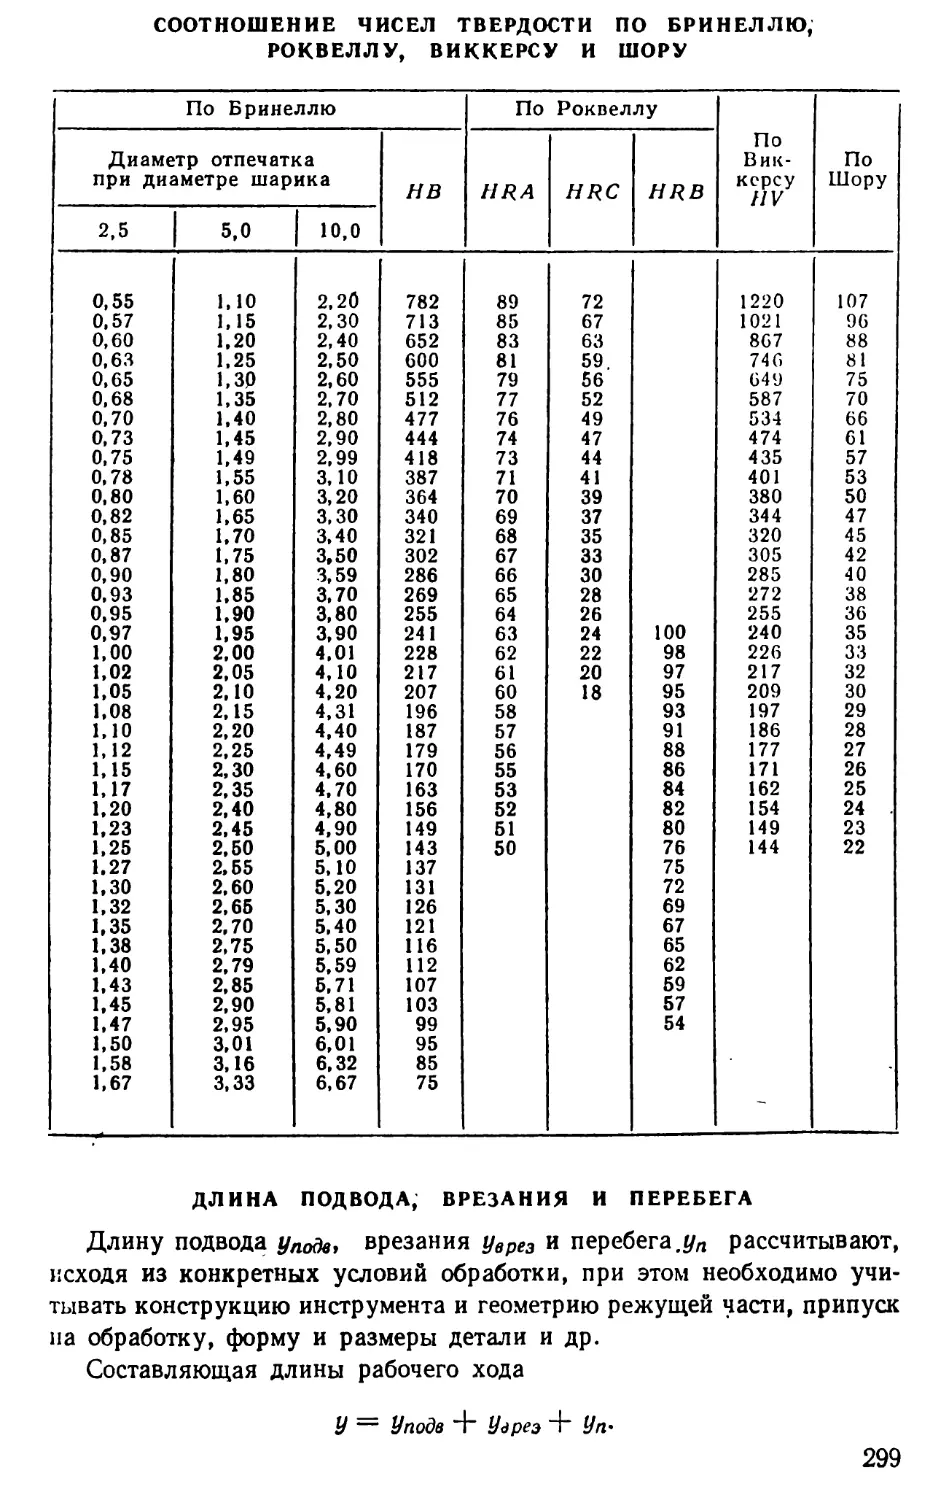 Соотношение чисел твердости по Бринеллю, Роквеллу, Внккерсу и Шору
Длина подвода, врезания и перебега